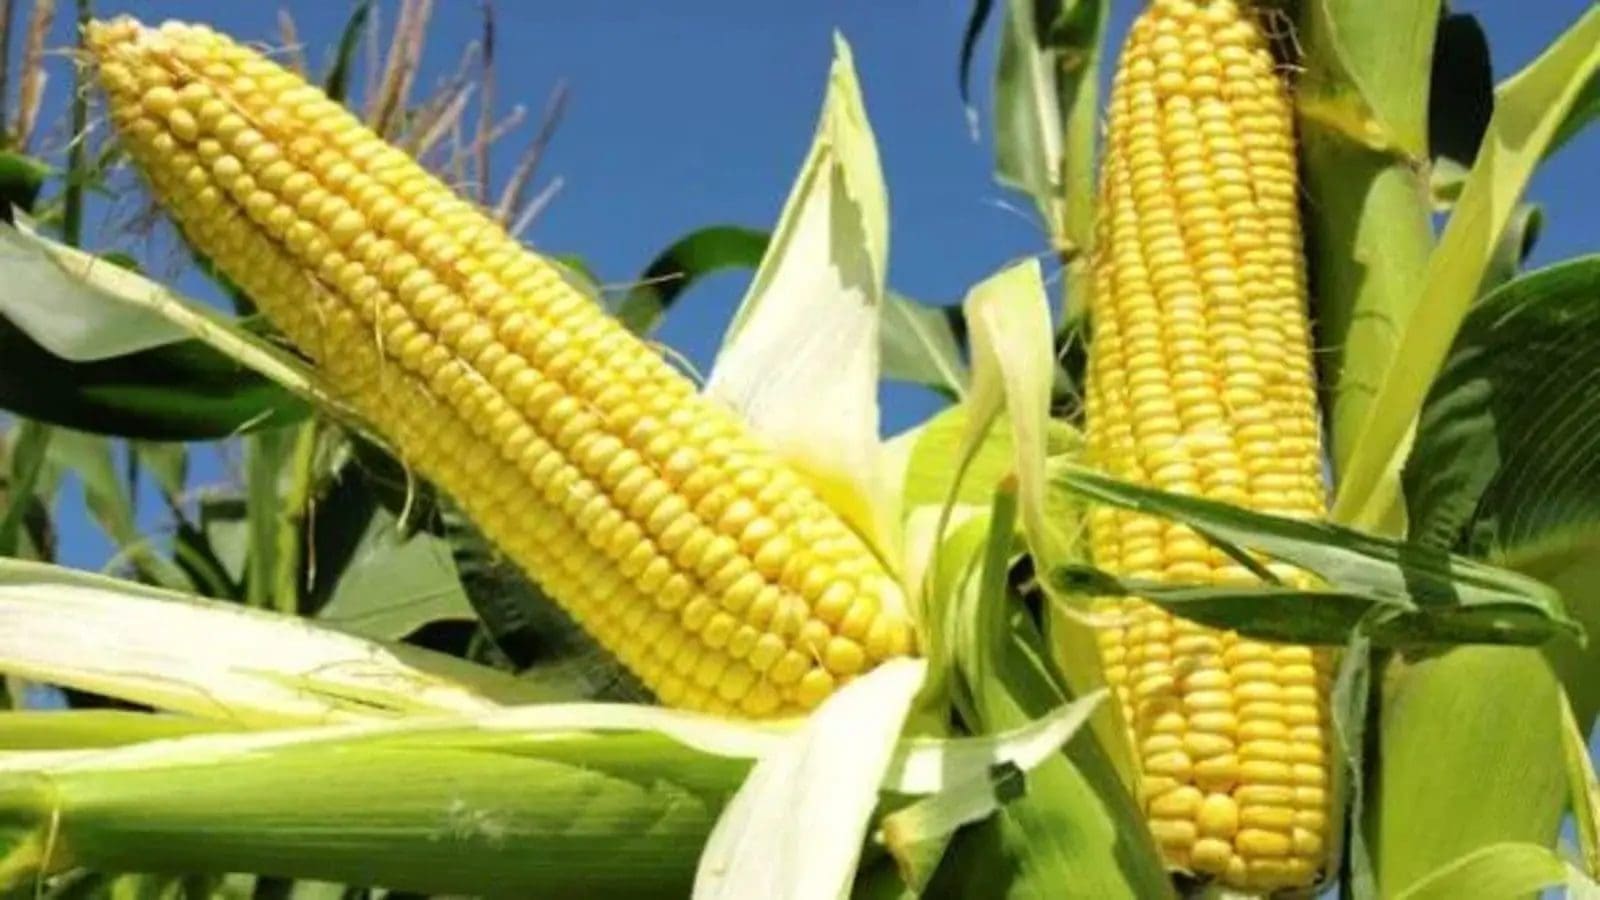 Biotech Tela maize gaining public attention in Rwanda